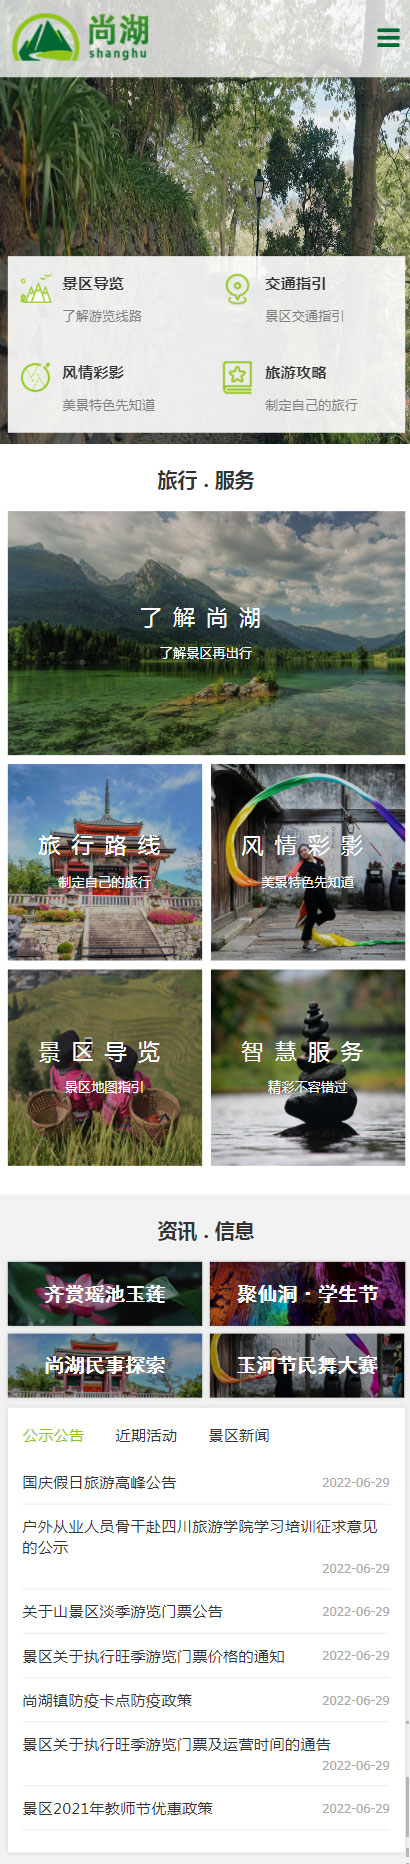 尚湖景区小程序展示模板